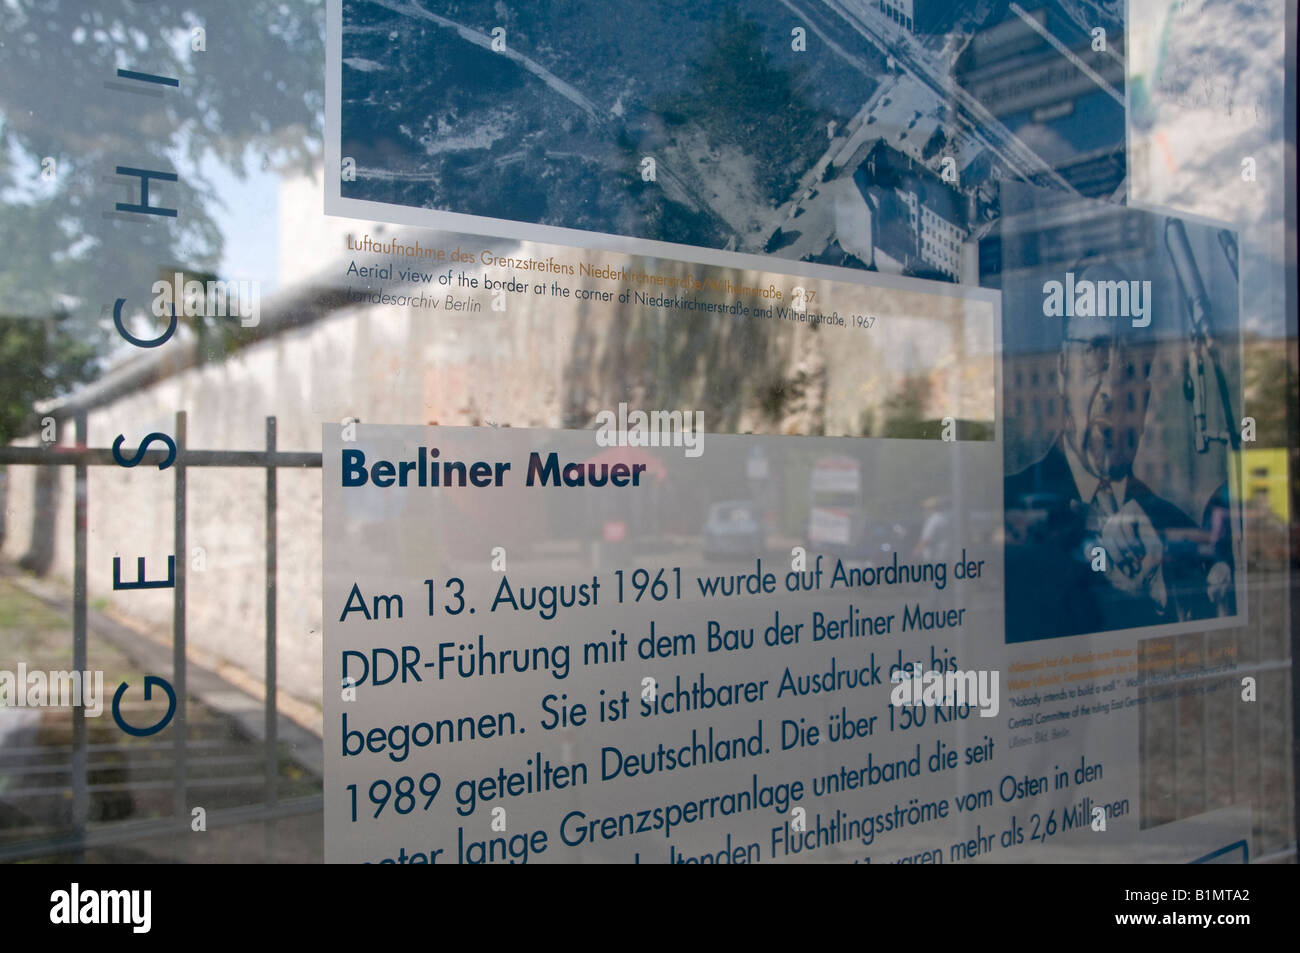 Ausstellung "Topographie des Terrors" auf dem Gelände der ehemaligen Gestapo Hauptsitz in Niederkirchner Straße, Berlin. Deutschland Stockfoto